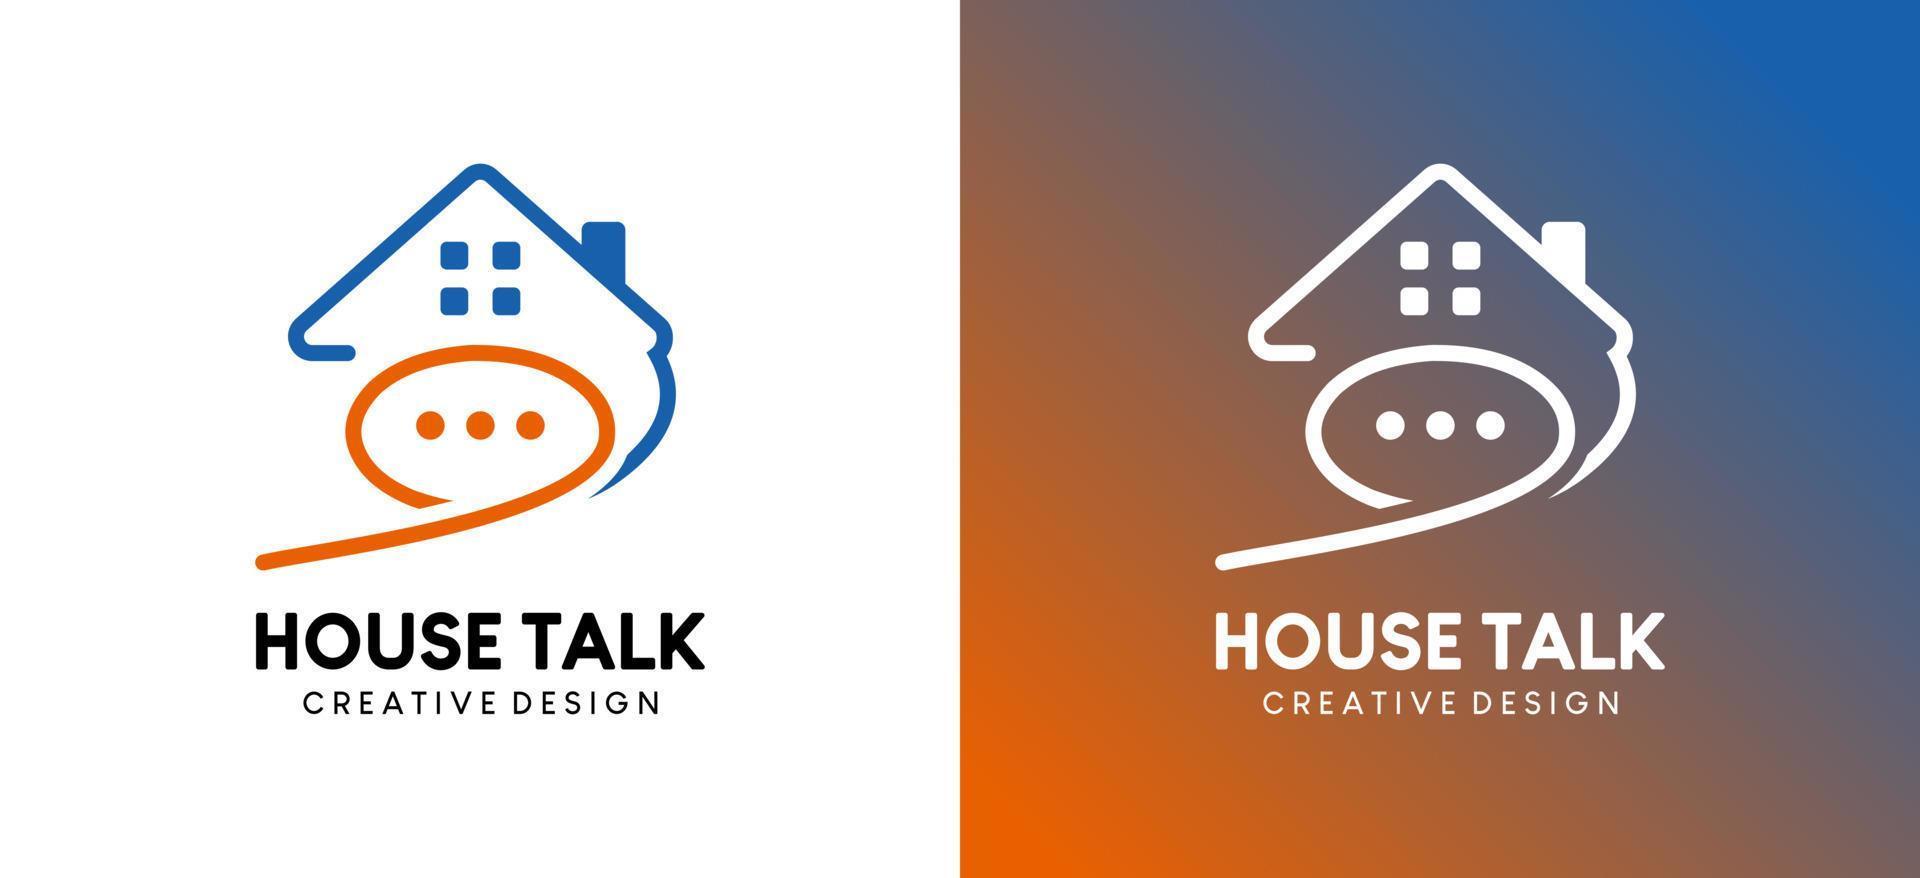 création de logo de conversation à domicile ou de consultation à domicile avec style d'art en ligne vecteur